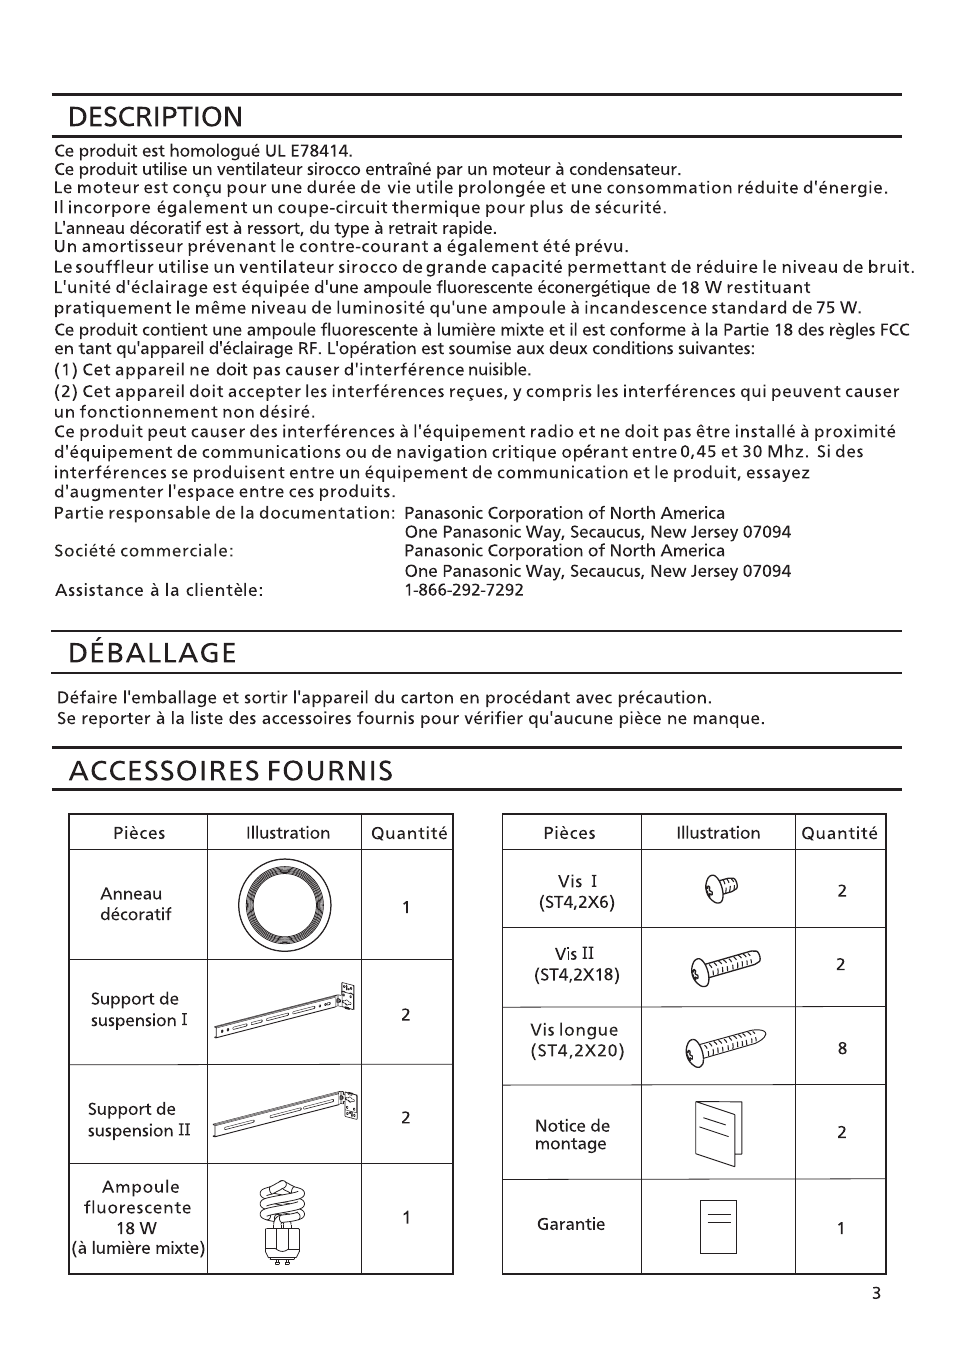 Description, Deballage, Accessoires fournis | Panasonic FV-08VRL1 Manuel d'utilisation | Page 3 / 8